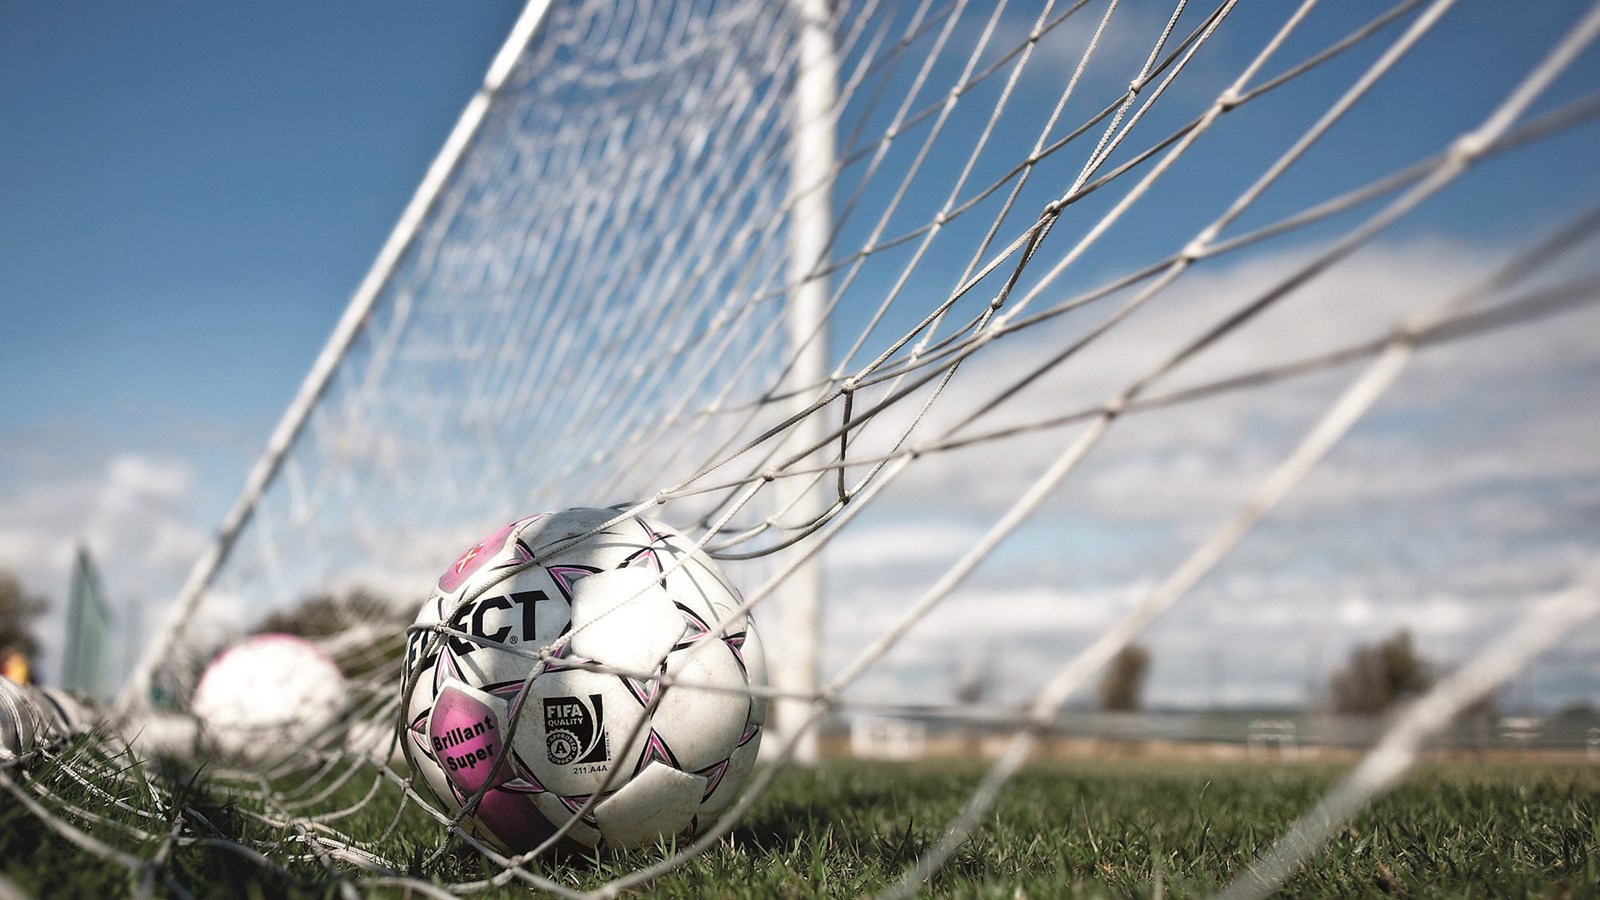 Dansk fodbold donerer beløb til migrantarbejdere i Qatar